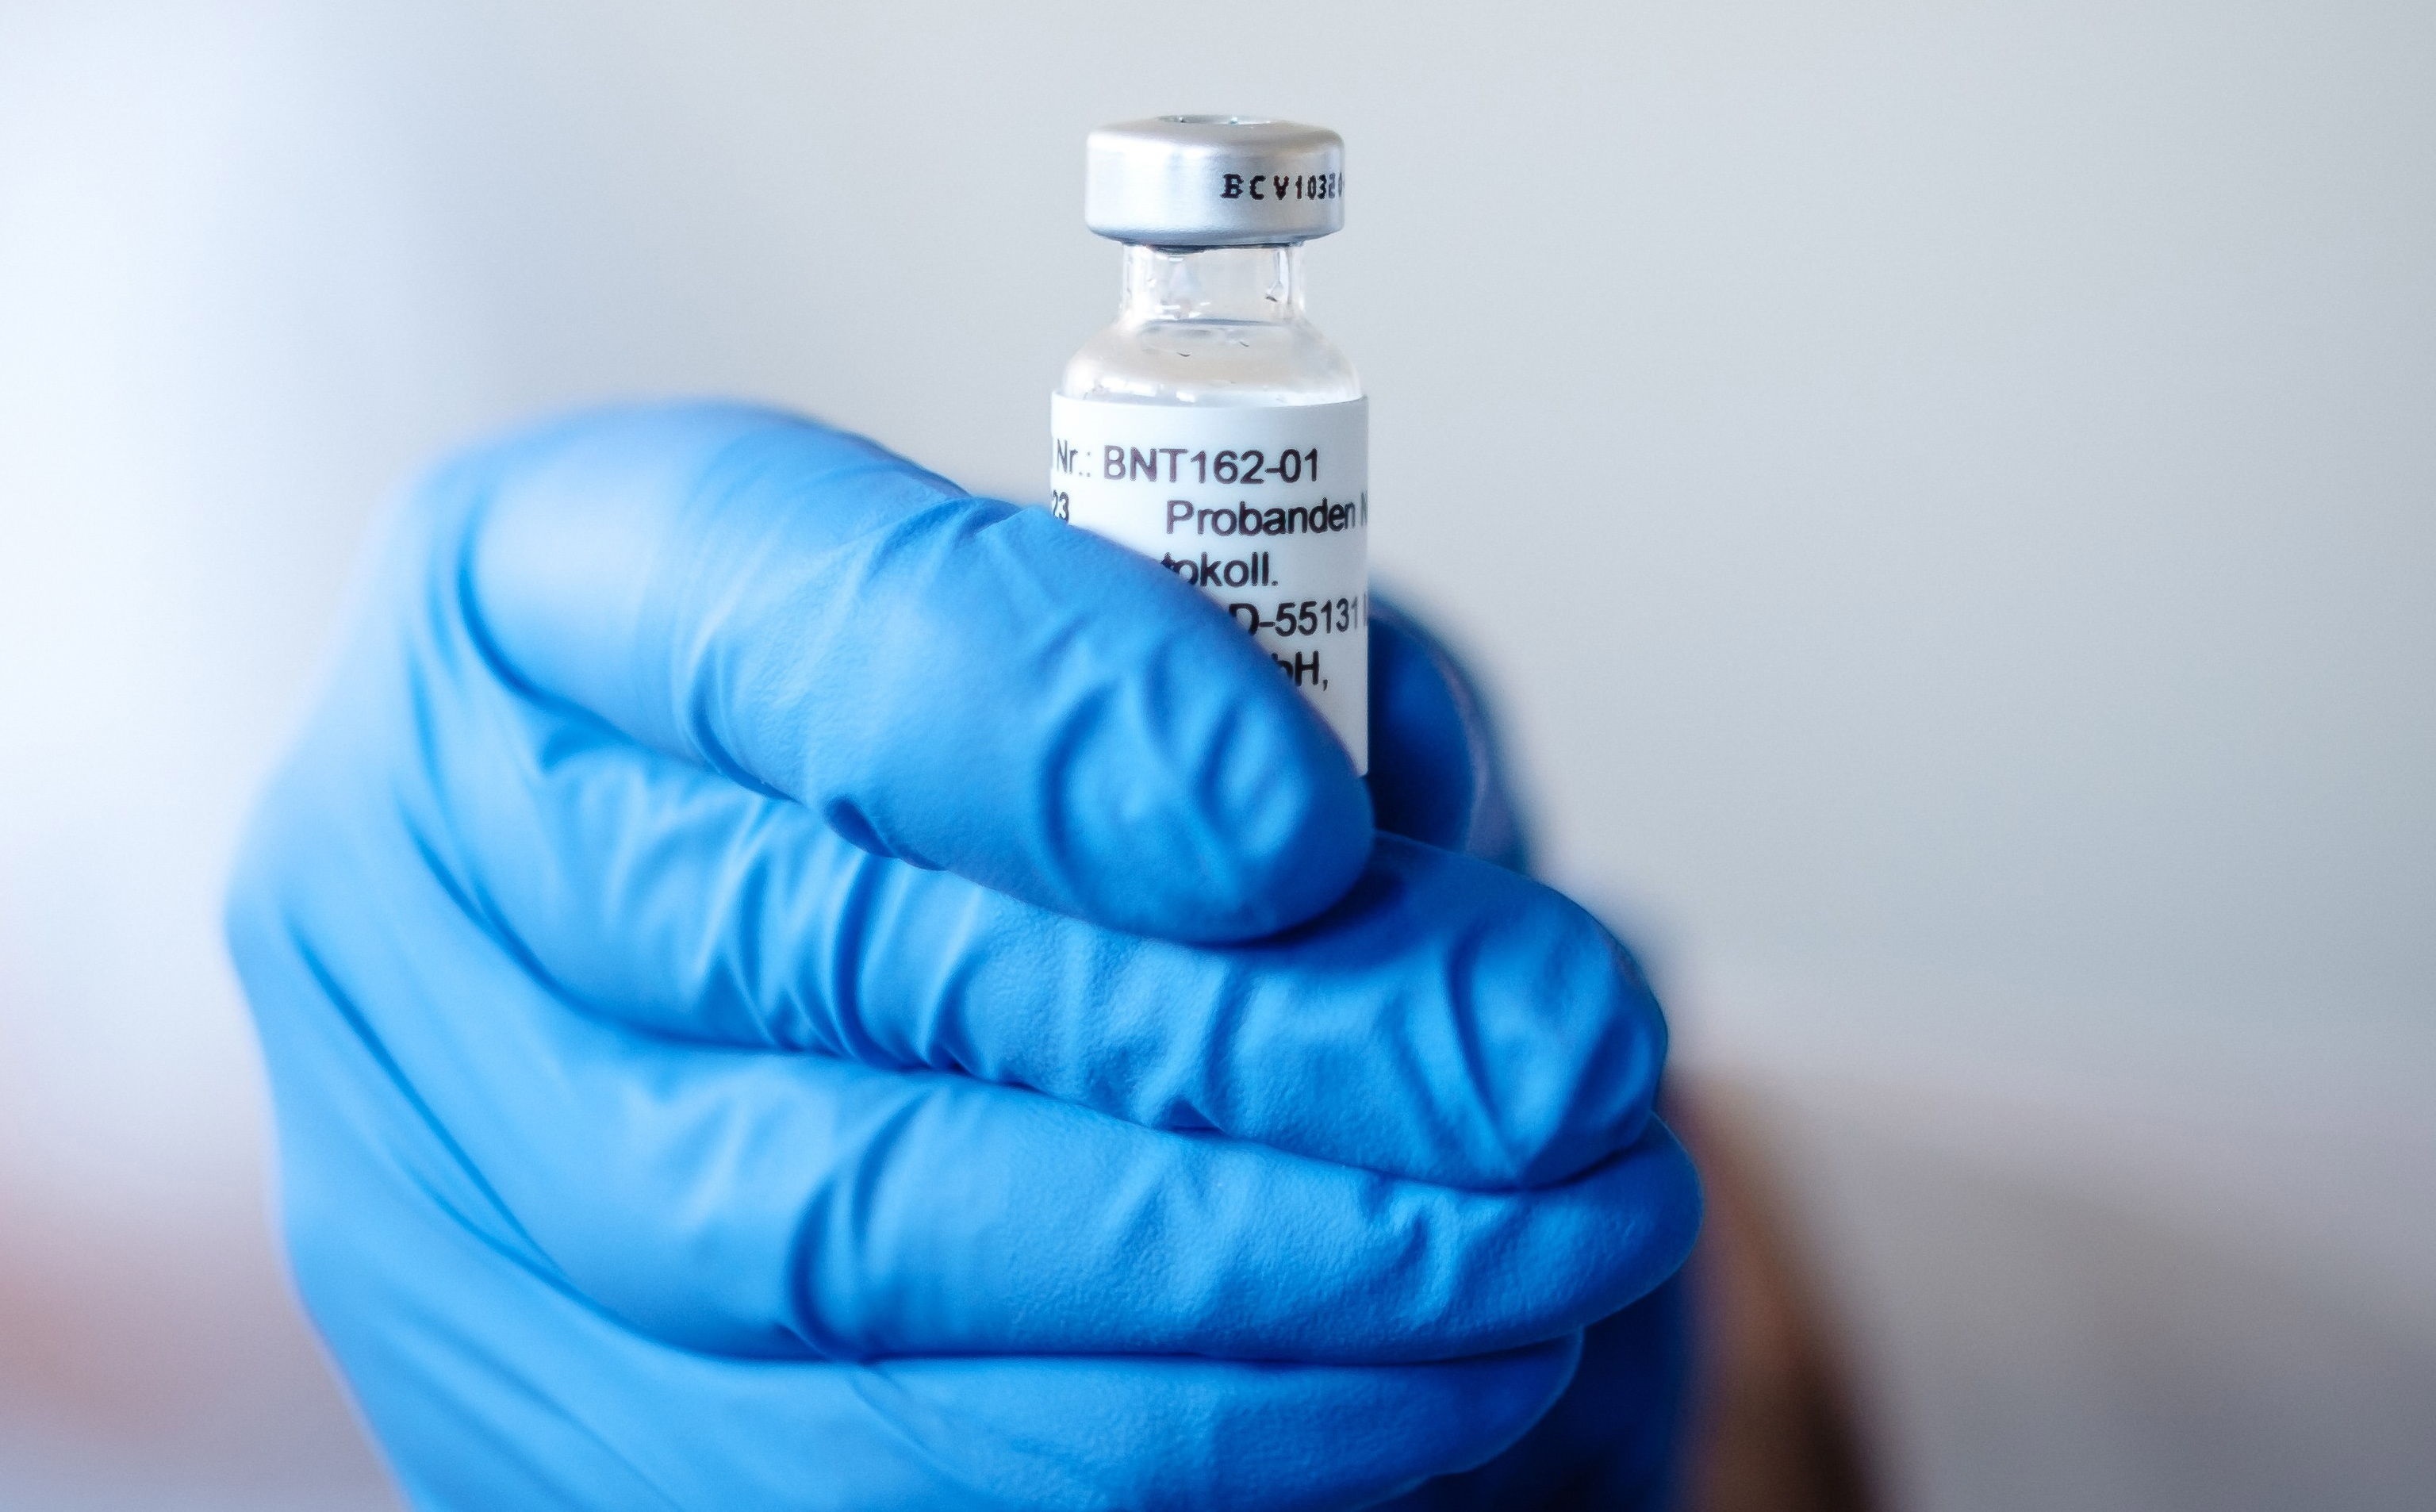 United Airlines empezó a transportar vacunas de Pfizer contra el Covid-19